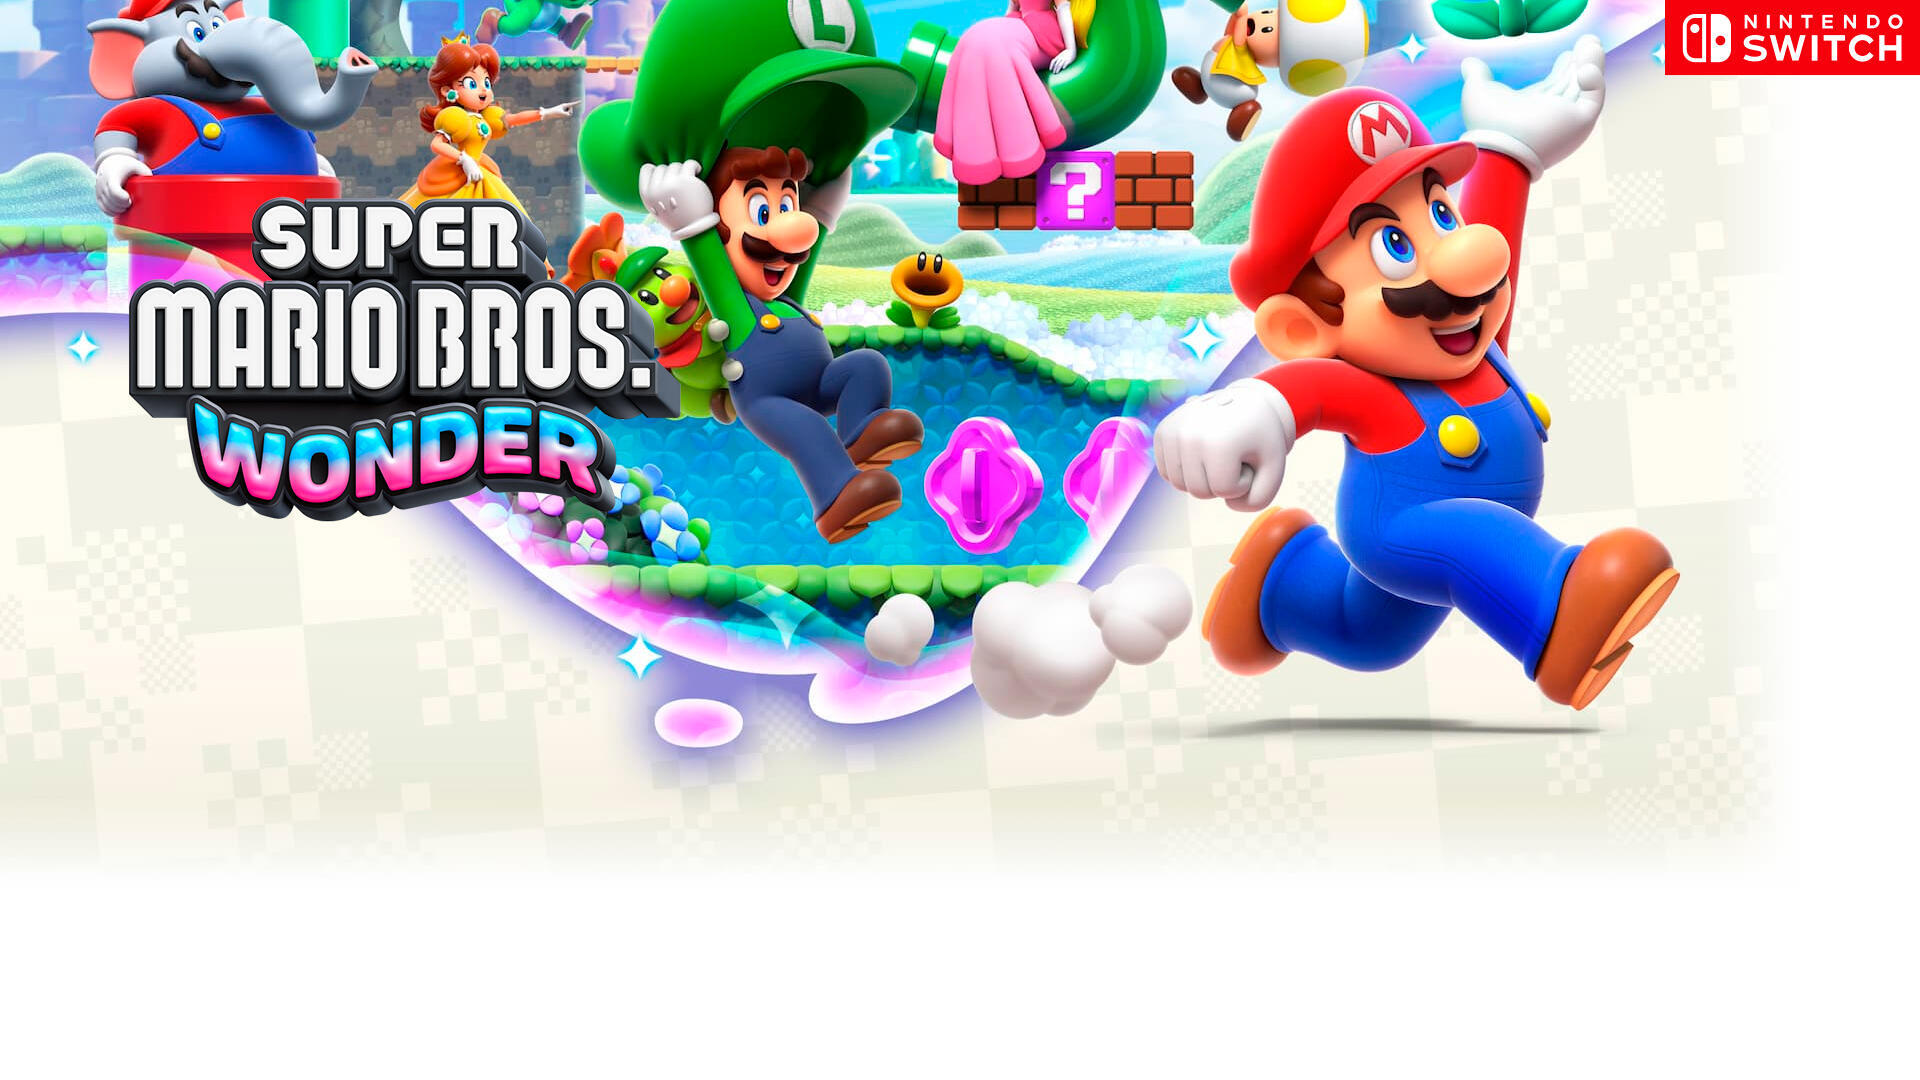 Super Mario Bros. Wonder nos recuerda por qué Nintendo es tan especial.